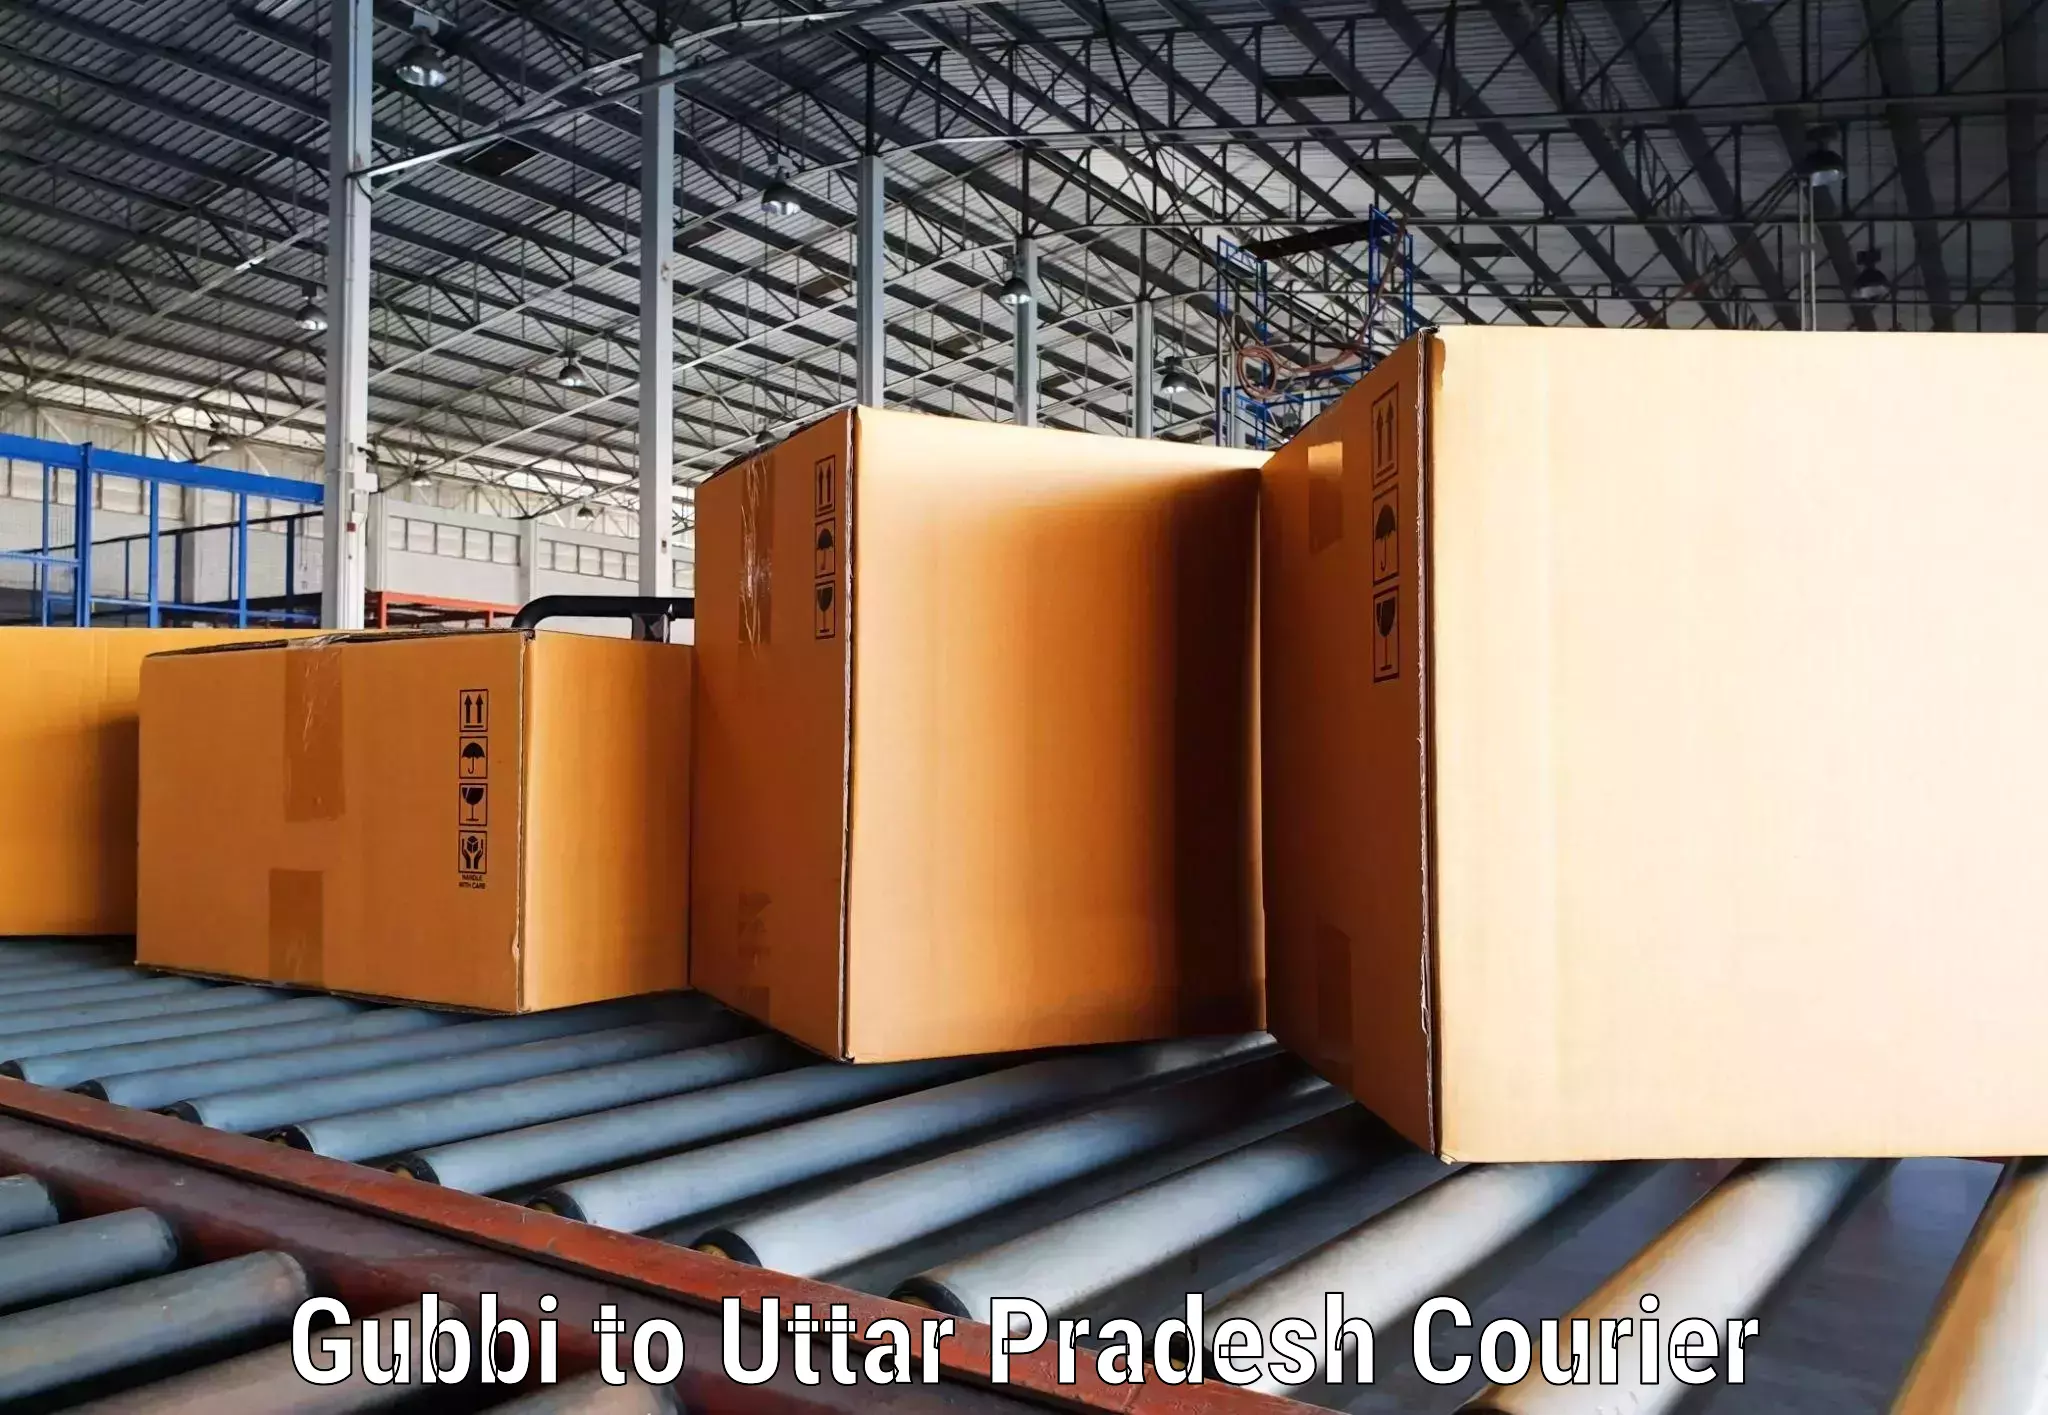 Courier service comparison Gubbi to Babatpur